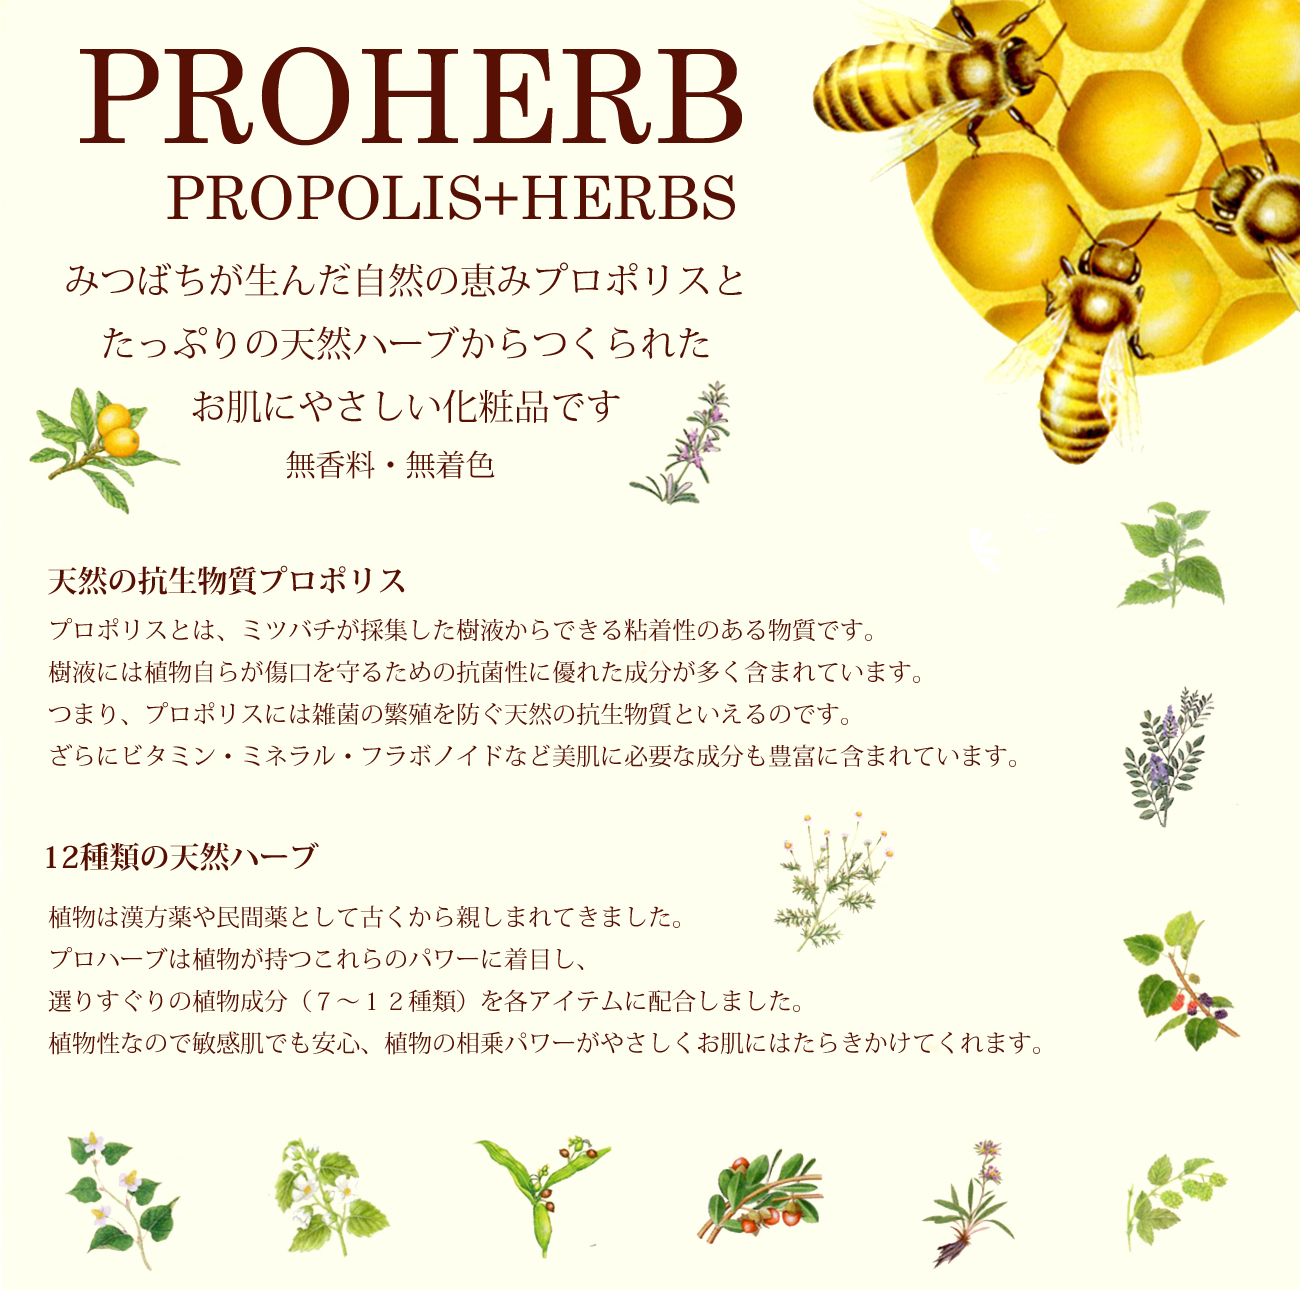 PROHERB PROPOLIS+HERBS
みつばちが生んだ自然の恵みプロポリスと
たっぷりの天然ハーブからつくられた
お肌にやさしい化粧品です
無香料・無着色

天然の抗生物質プロポリス　
プロポリスとは、ミツバチが採集した樹液からできる粘着性のある物質です。
樹液には植物自らが傷口を守るための抗菌性に優れた成分が多く含まれています。
つまり、プロポリスには雑菌の繁殖を防ぐ天然の抗生物質といえるのです。
ざらにビタミン・ミネラル・フラボノイドなど美肌に必要な成分も豊富に含まれています。
12種類の天然ハーブ
植物は漢方薬や民間薬として古くから親しまれてきました。
プロハーブは植物が持つこれらのパワーに着目し、
選りすぐりの植物成分（７～１２種類）を各アイテムに配合しました。
植物性なので敏感肌でも安心、植物の相乗パワーがやさしくお肌にはたらきかけてくれます。
